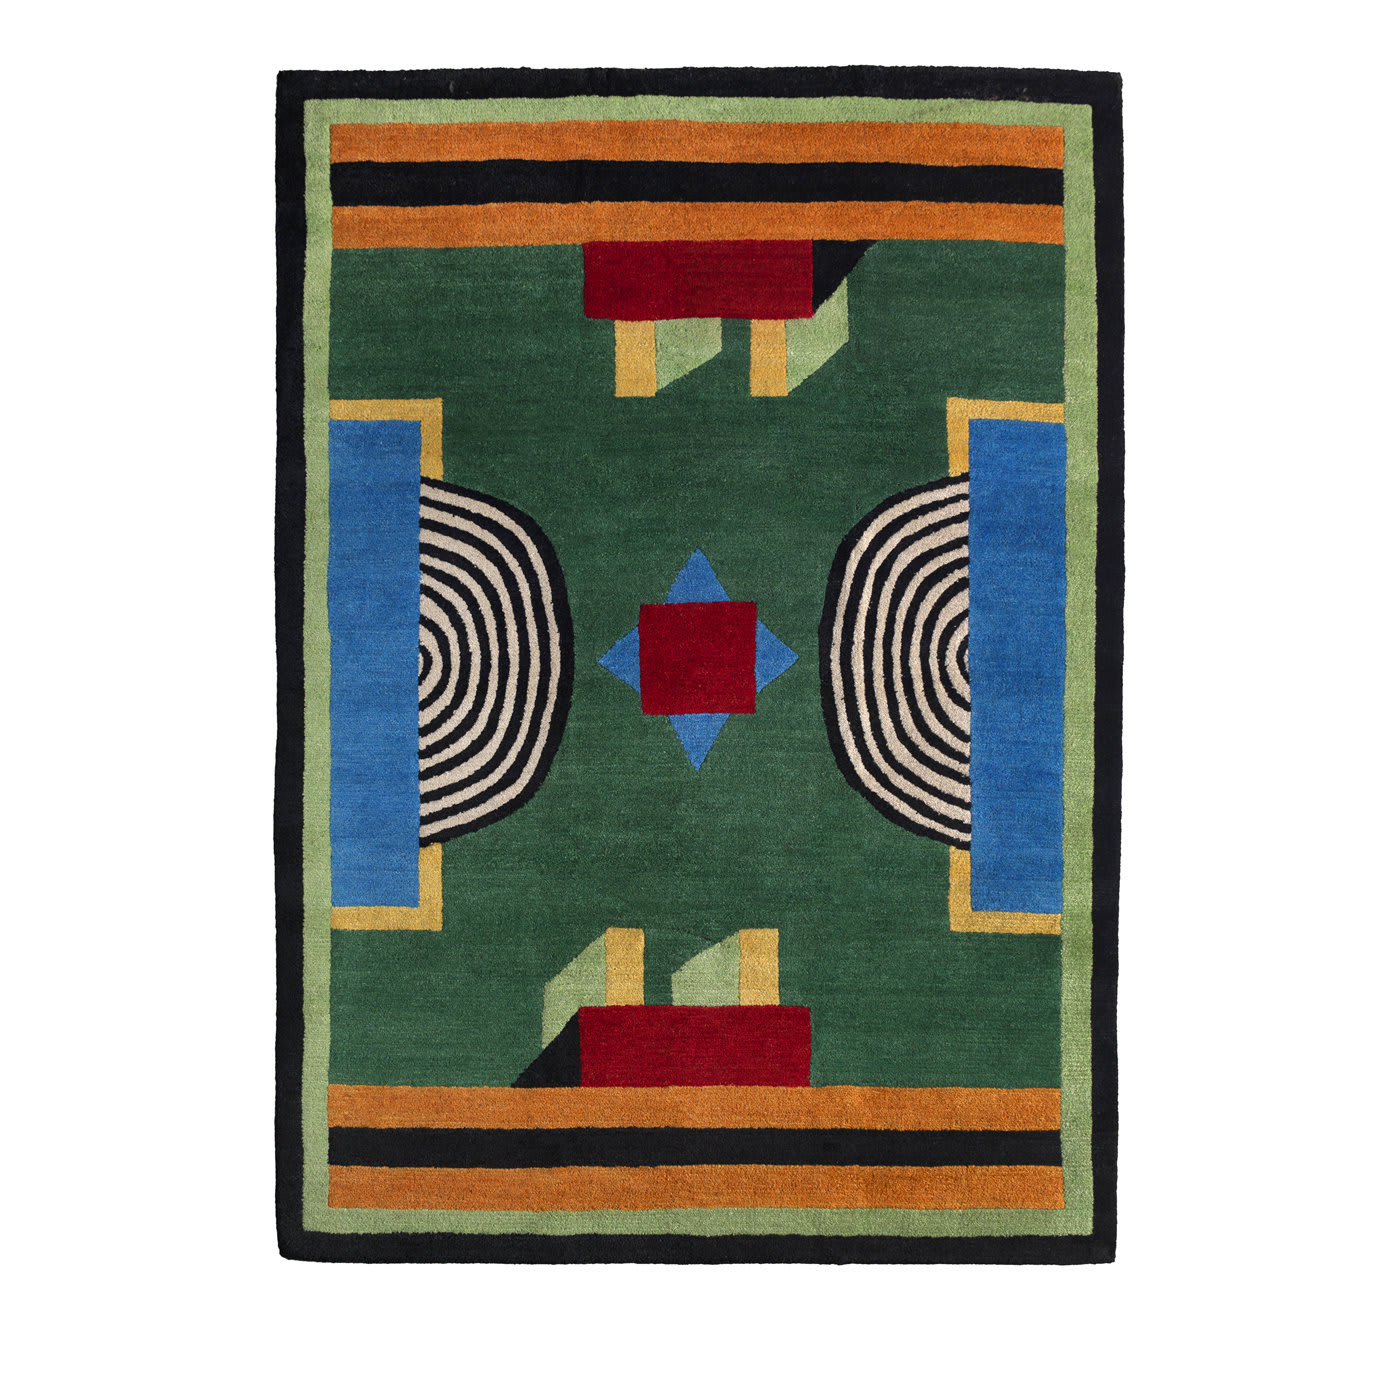 NDP52 Carpet by Nathalie Du Pasquier - Post Design - Memphis